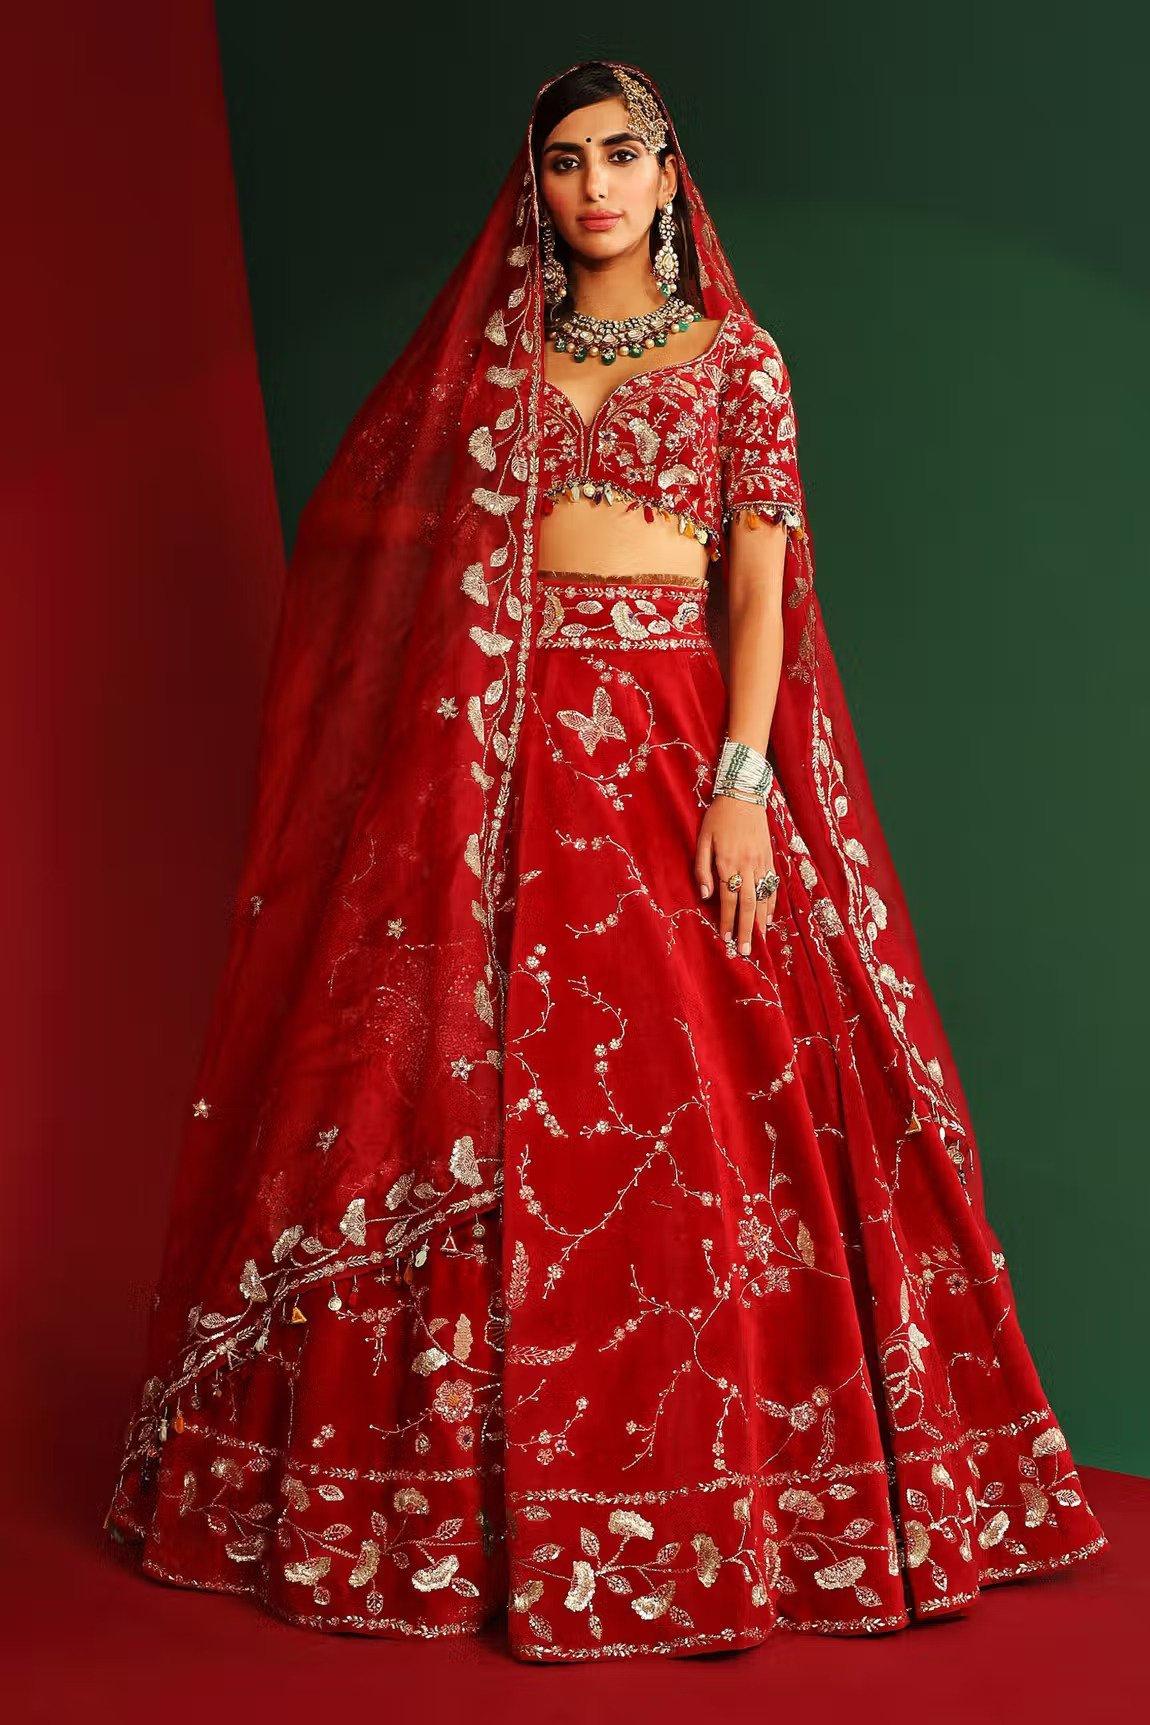 lehenga for wedding Buy from Shahpur Jat Fashion Street Market | चांदनी चौक  से अच्छा लहंगा मिलता है इस बाजार में, इंडियन-वेस्टर्न लहंगे की सारी लेटेस्ट  डिजाइन यहां ...